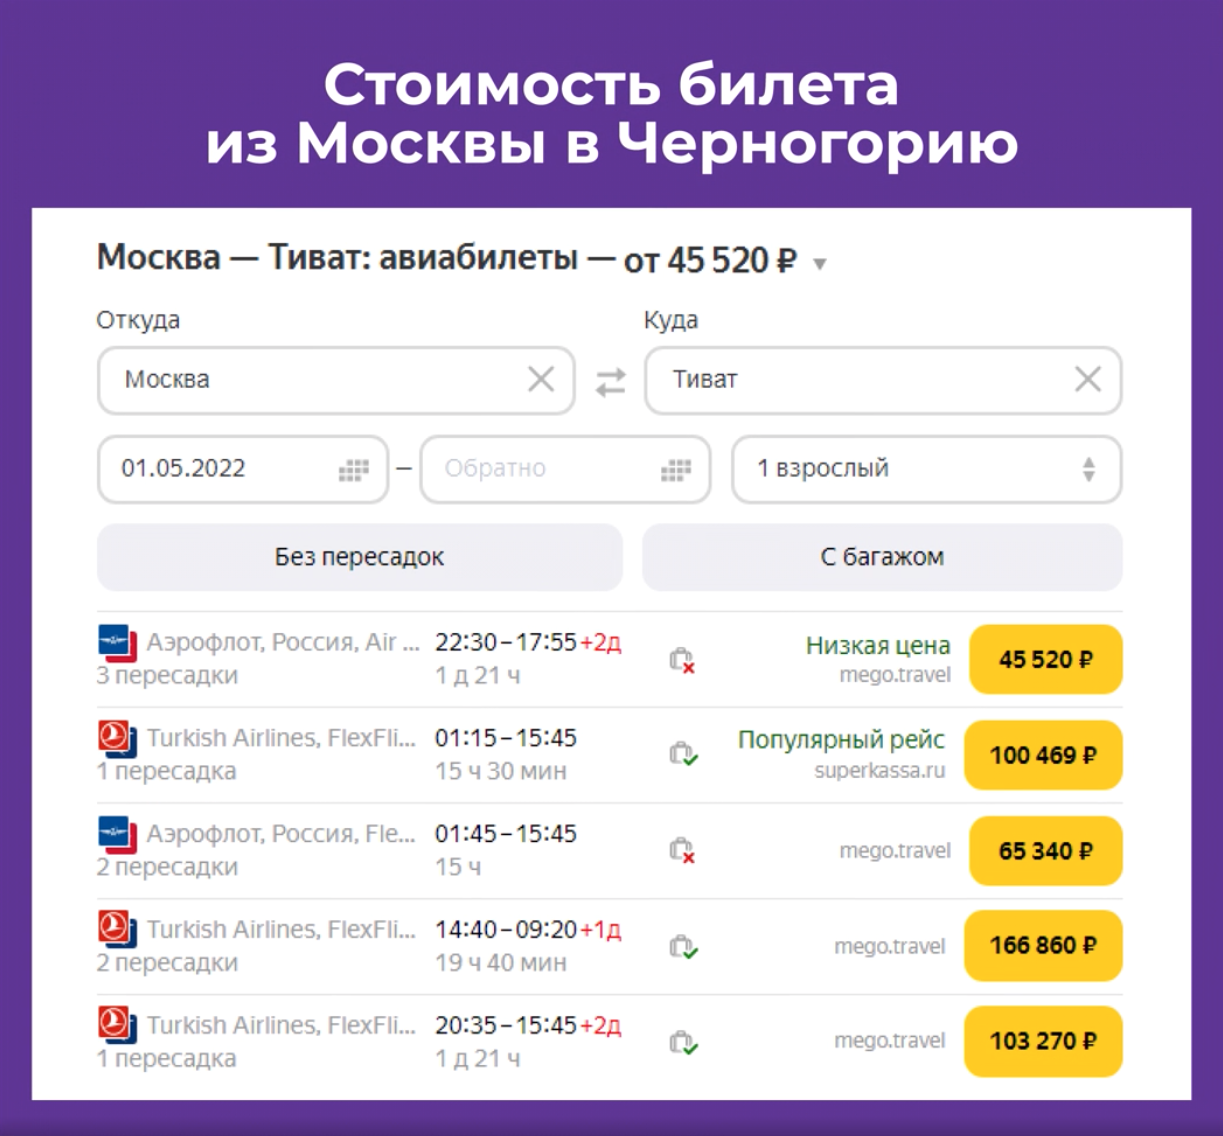 Стоимость билета из Москвы в Черногорию